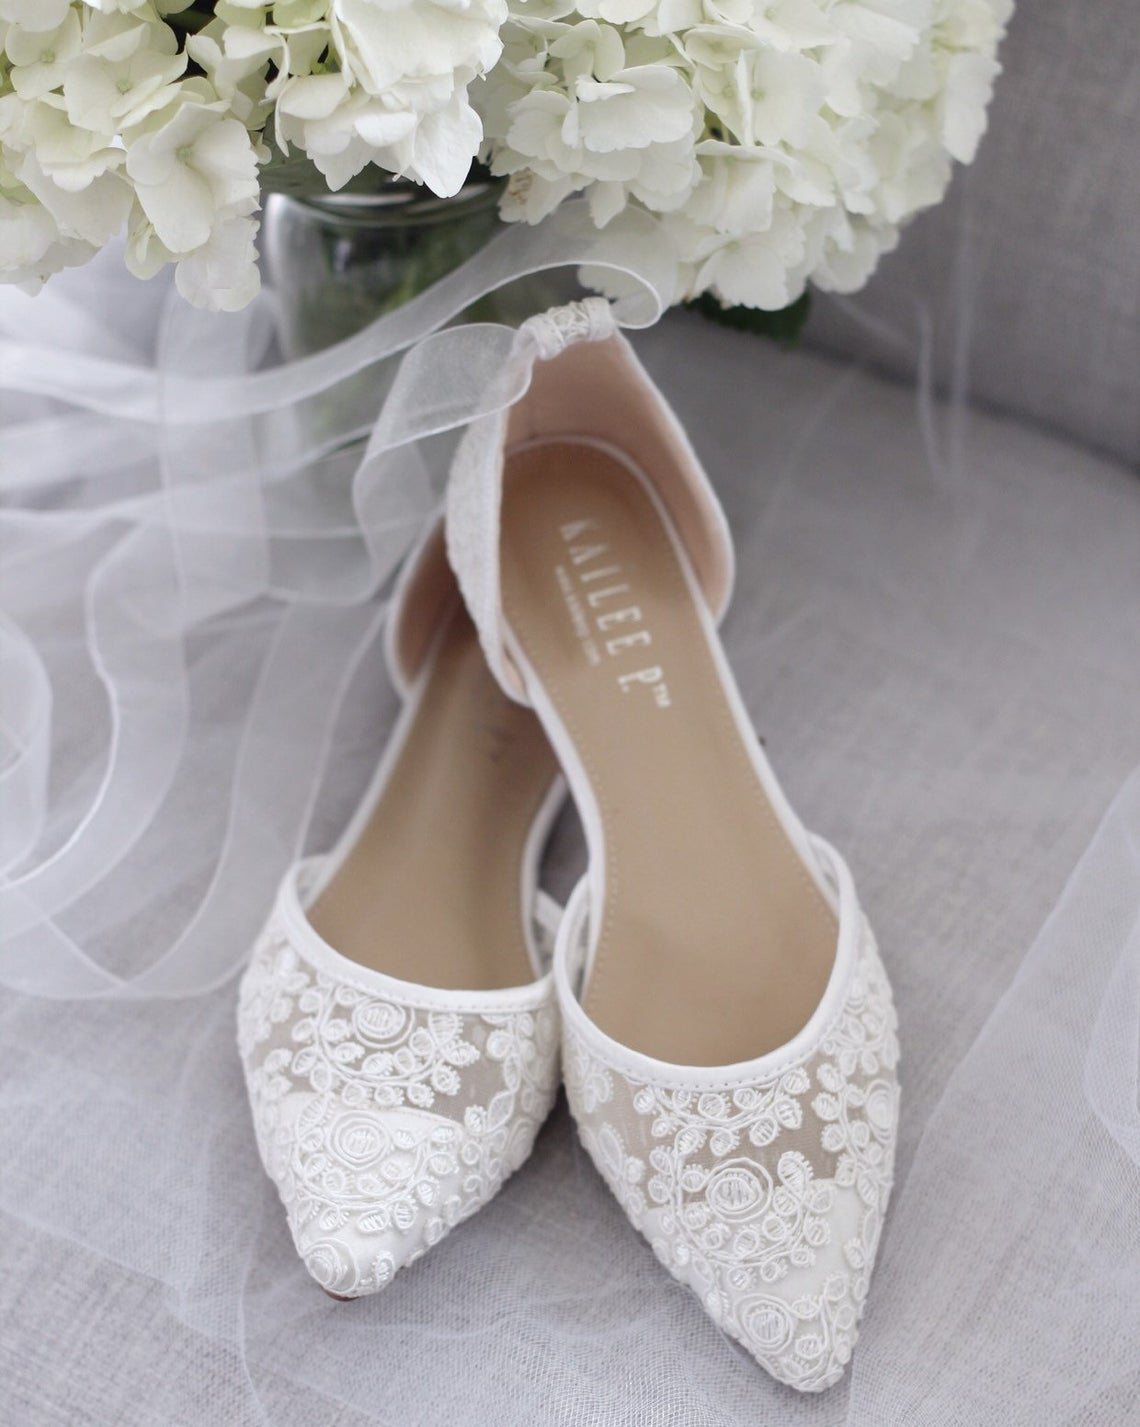 Designer Flat Bridal Shoes